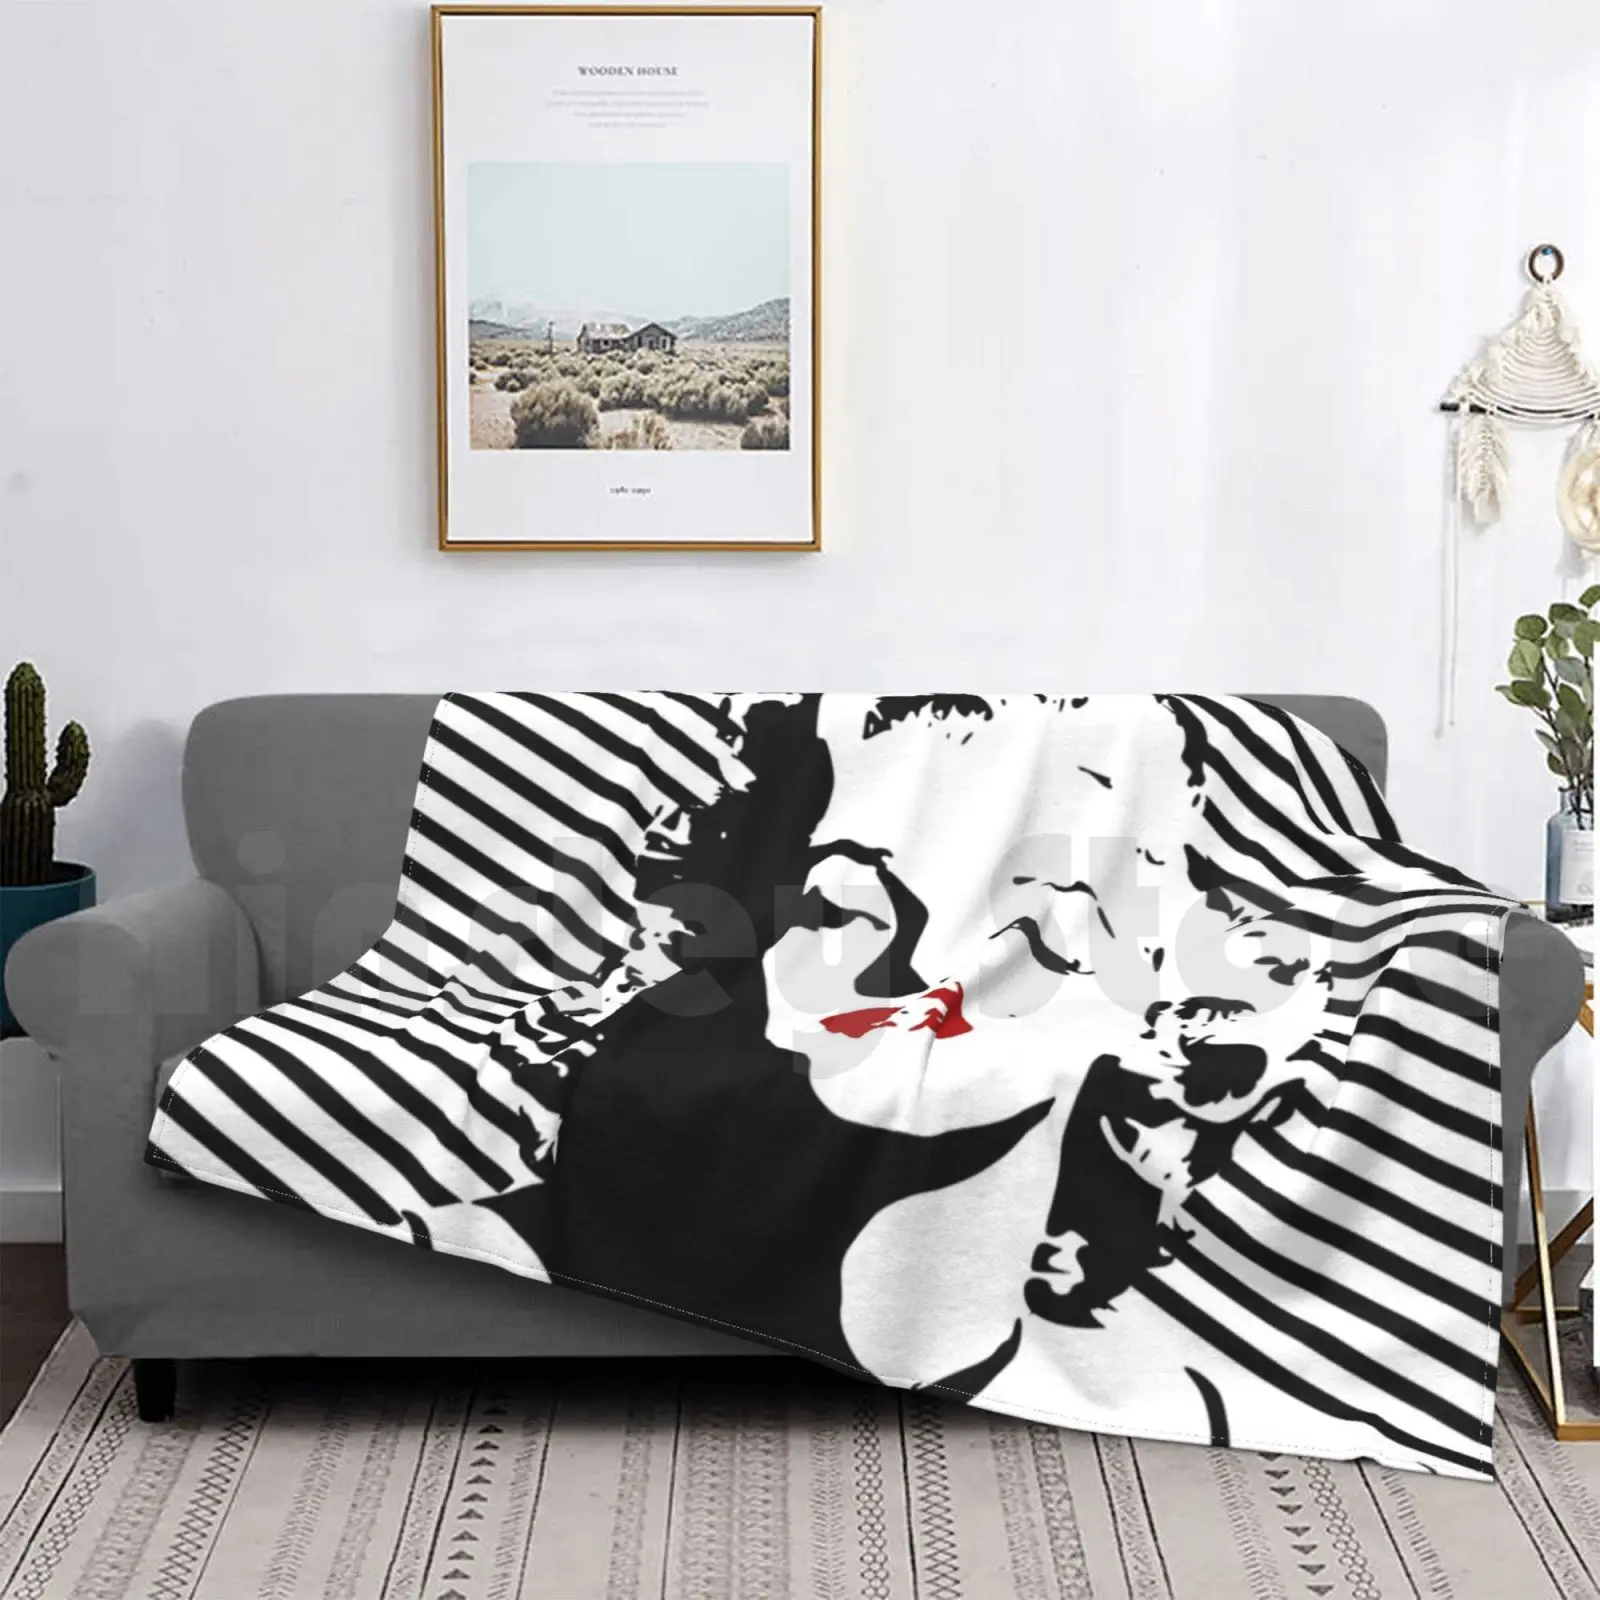 

Модное одеяло Мэрилин Монро на заказ, Мэрилин Монро, блондинка, звезда, эстетическое одеяло 60s 50s, норма Джинс